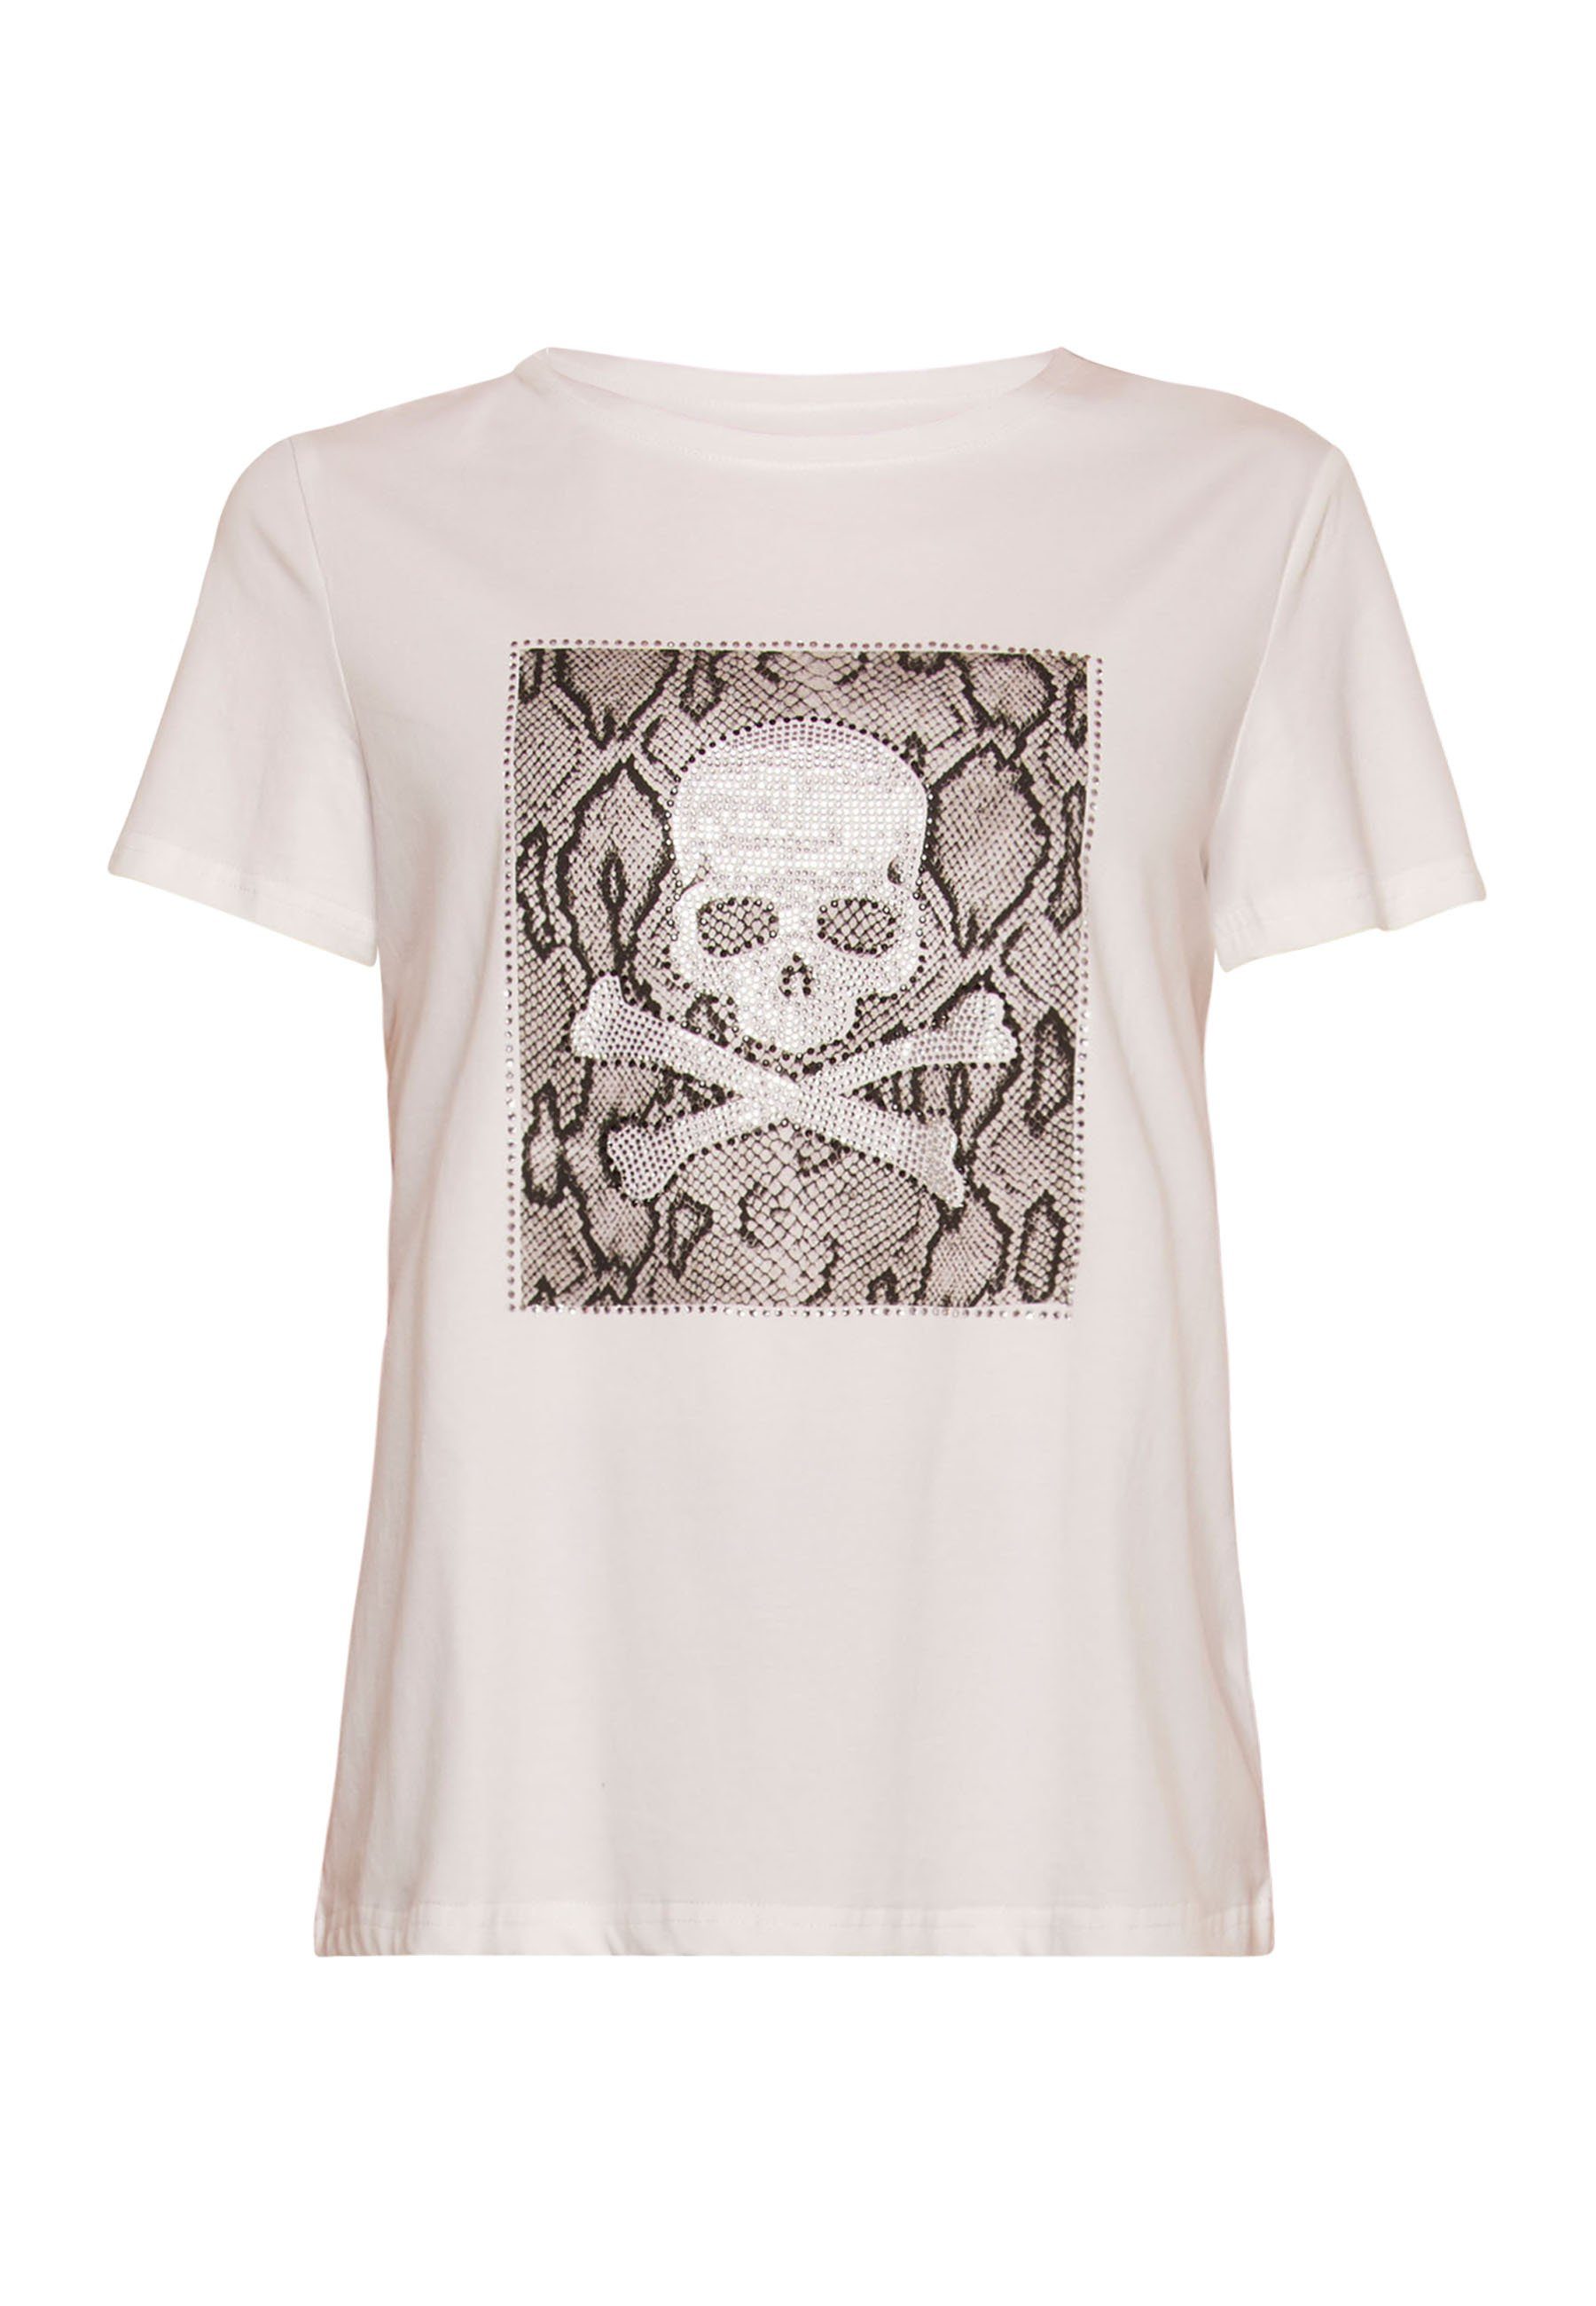 weiss Tooche T-shirt Print-Shirt Totenkopf